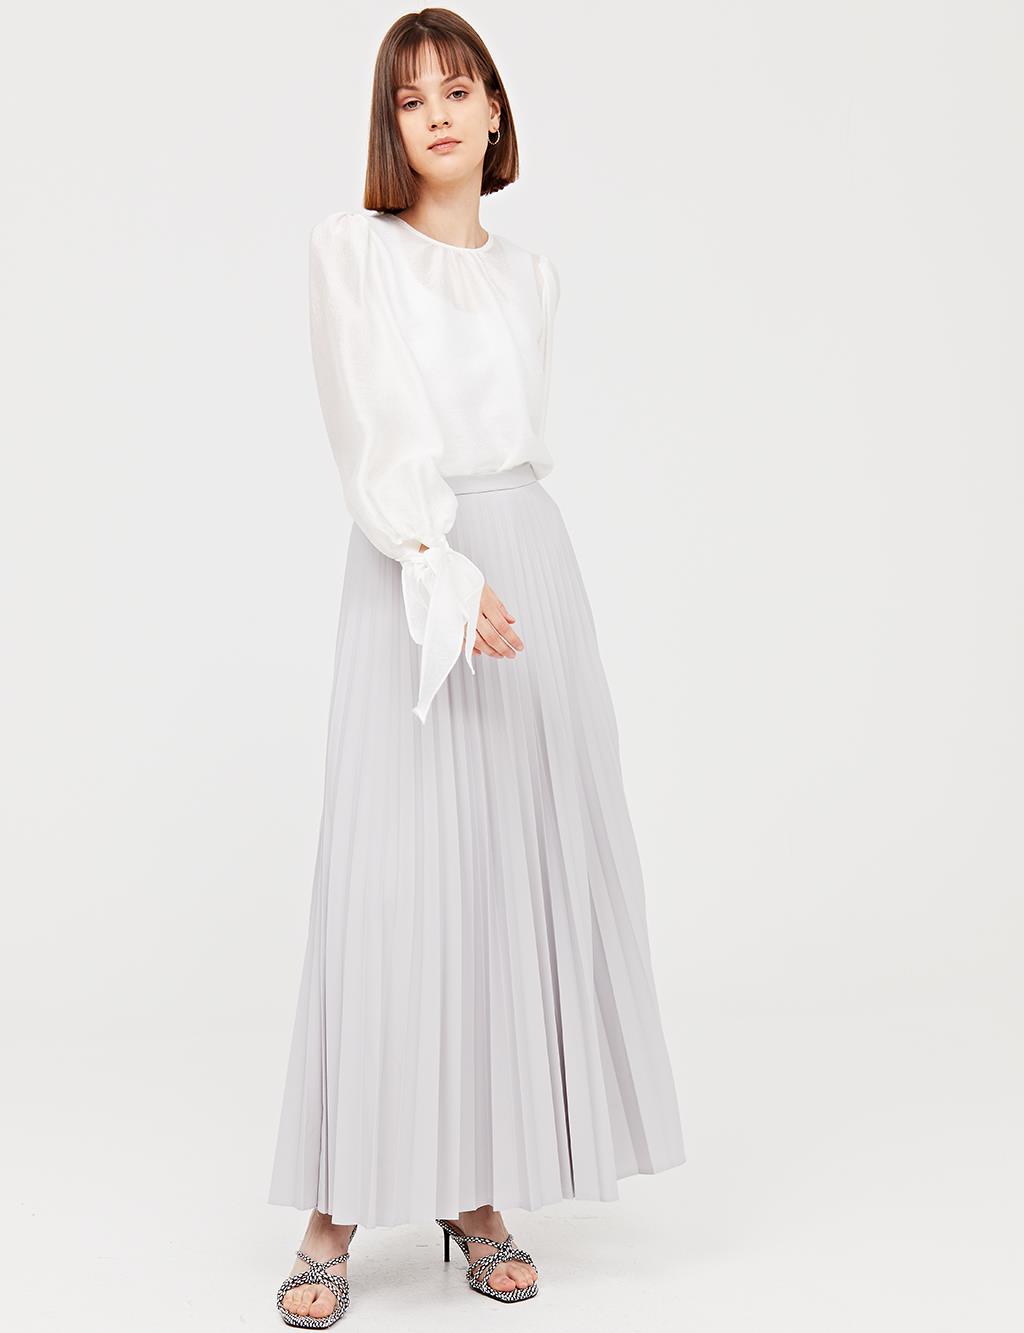 Basic Pleated Skirt SZ 12501 Gray